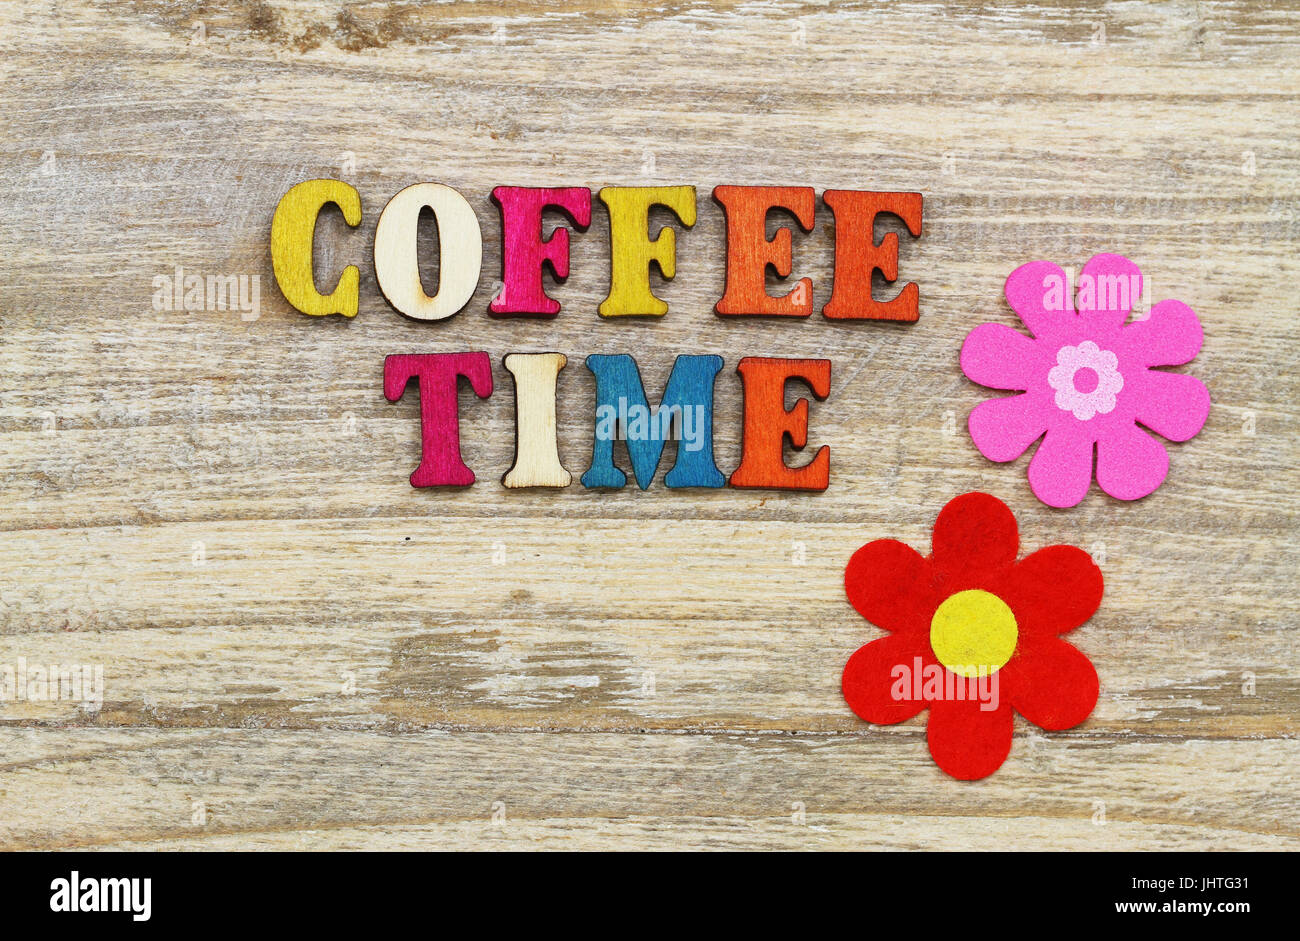 Kaffee-Zeit mit bunten Holzbuchstaben auf Holzoberfläche und zwei Blumen geschrieben Stockfoto